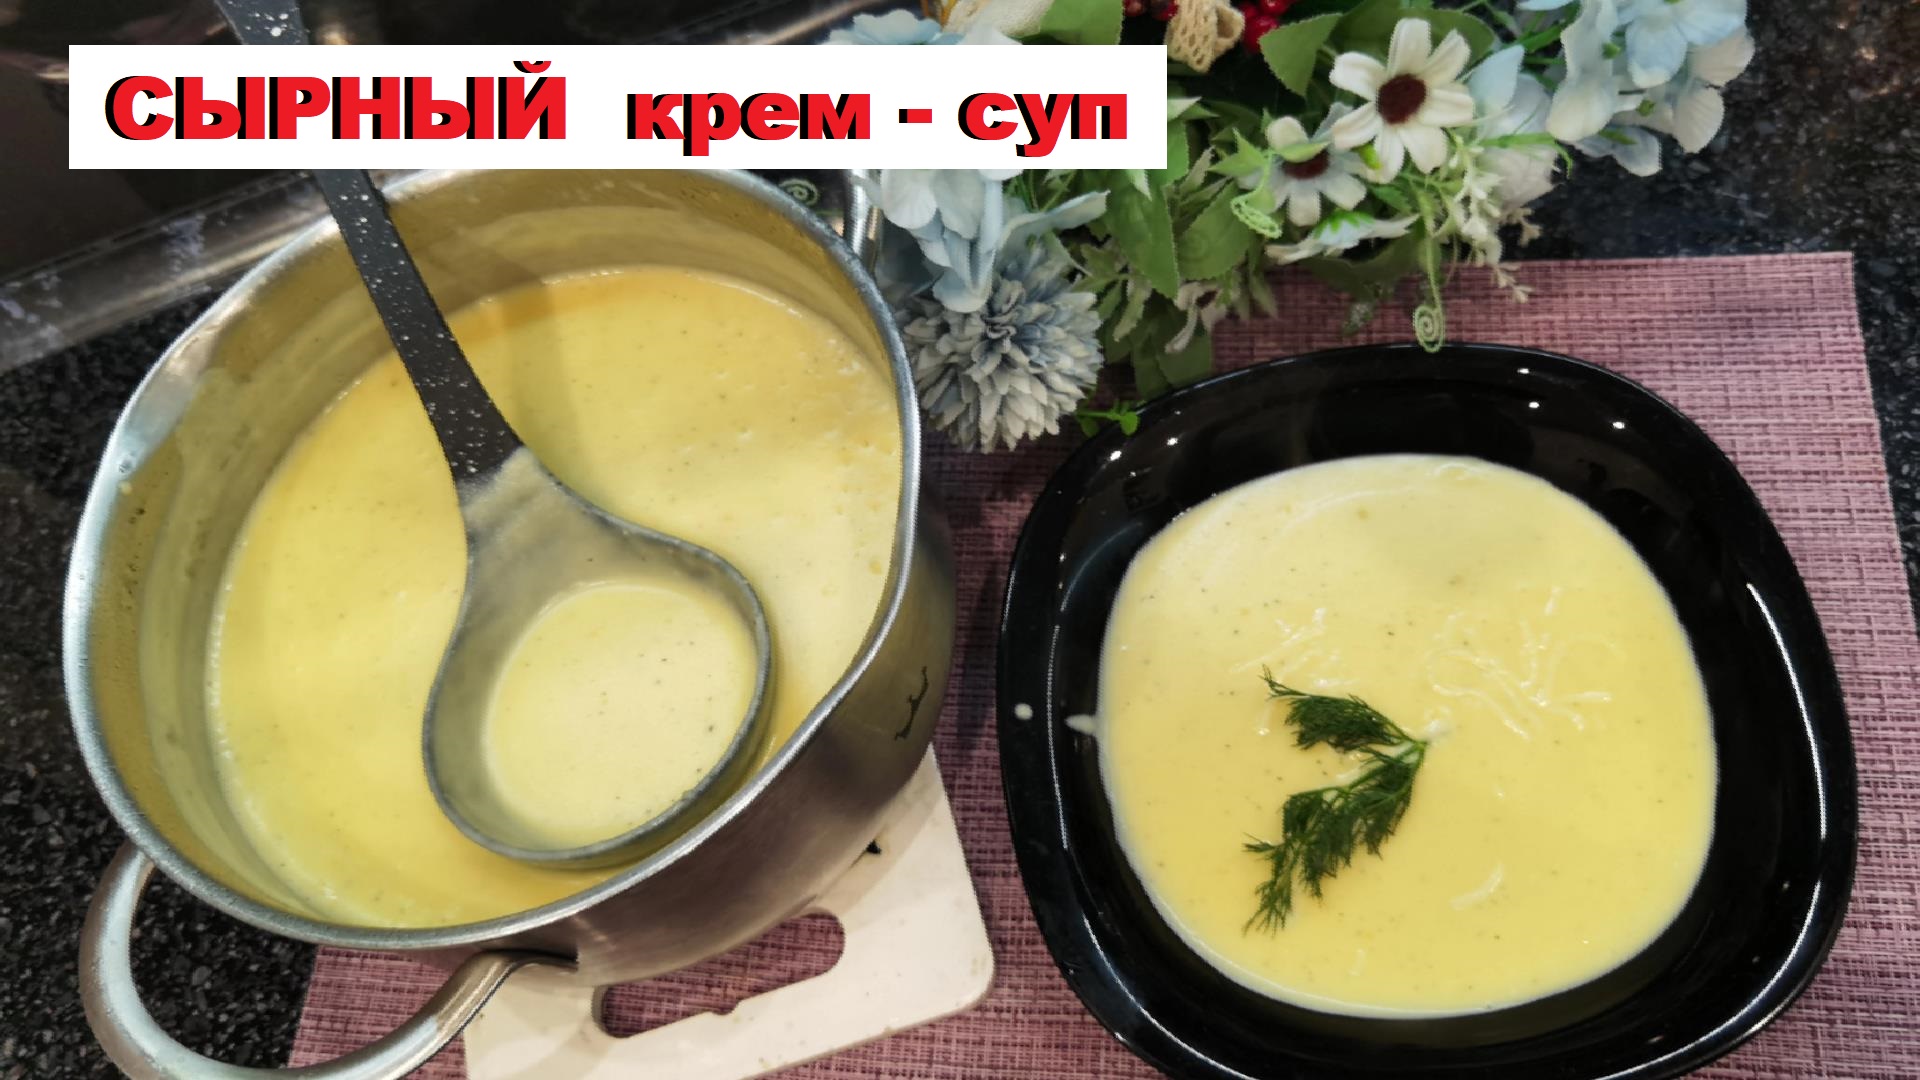 сырный крем-суп / cheese cream soup